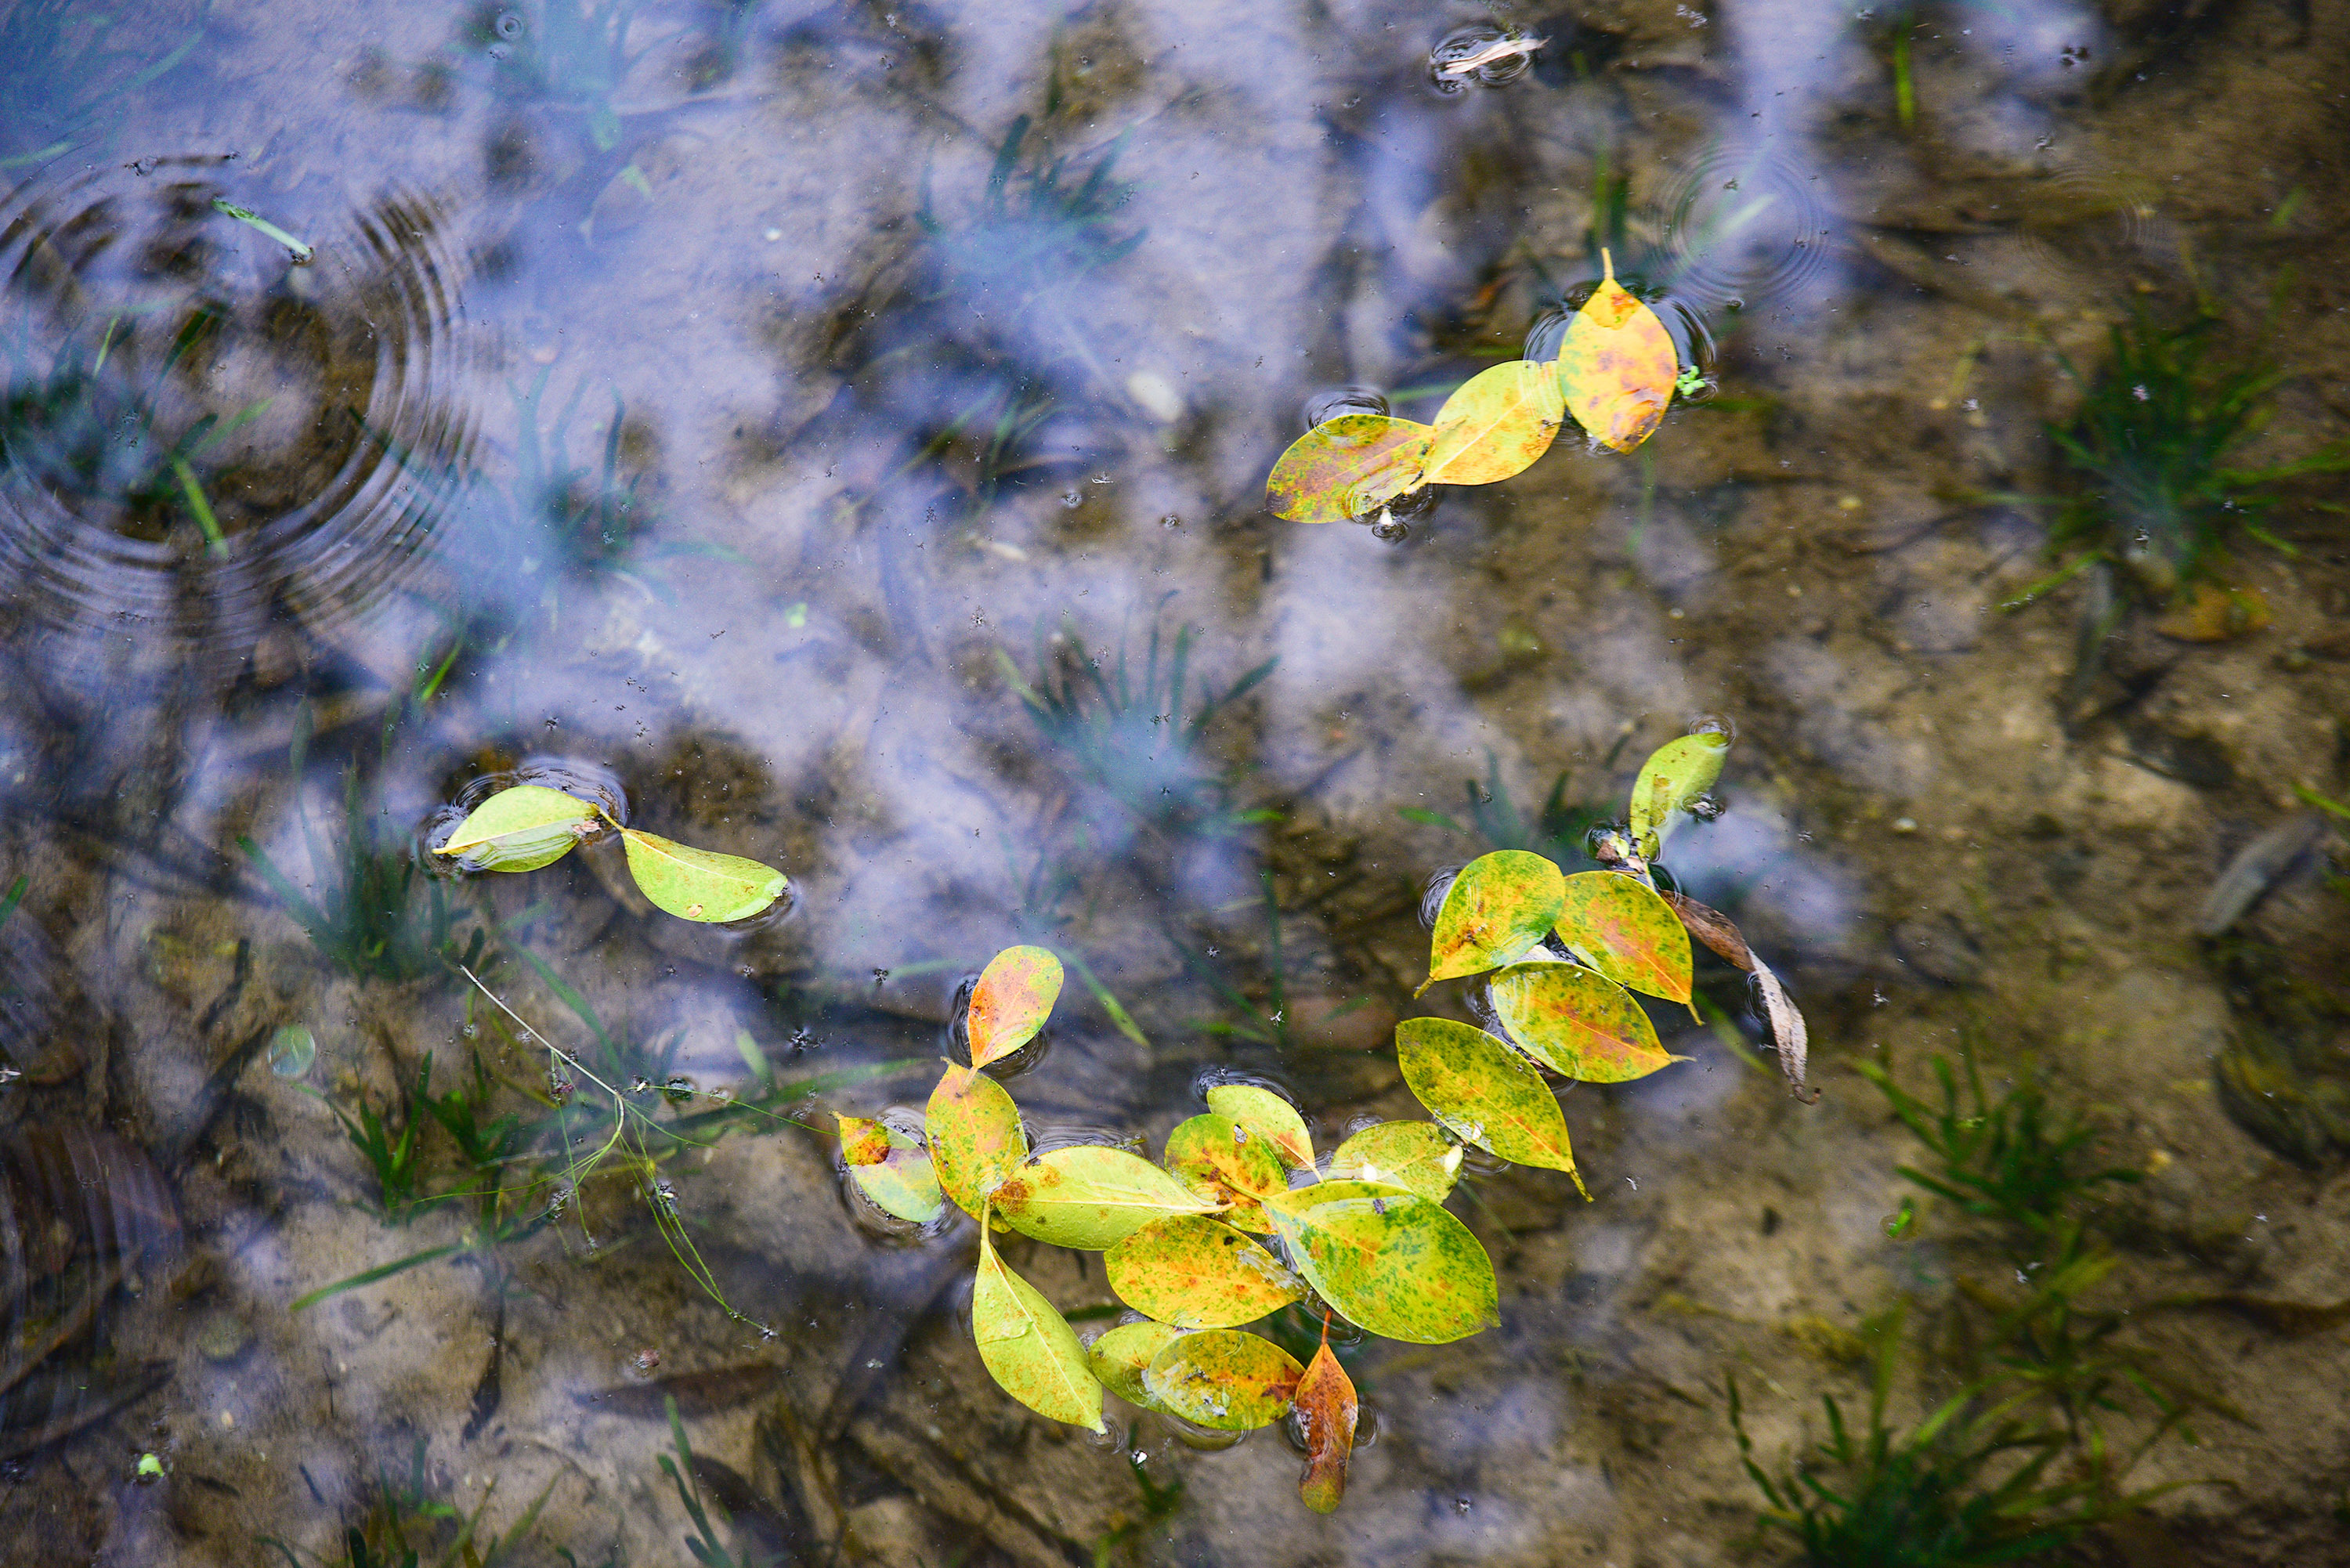 湖底的水生植物清晰可见(摄影:钟戈)